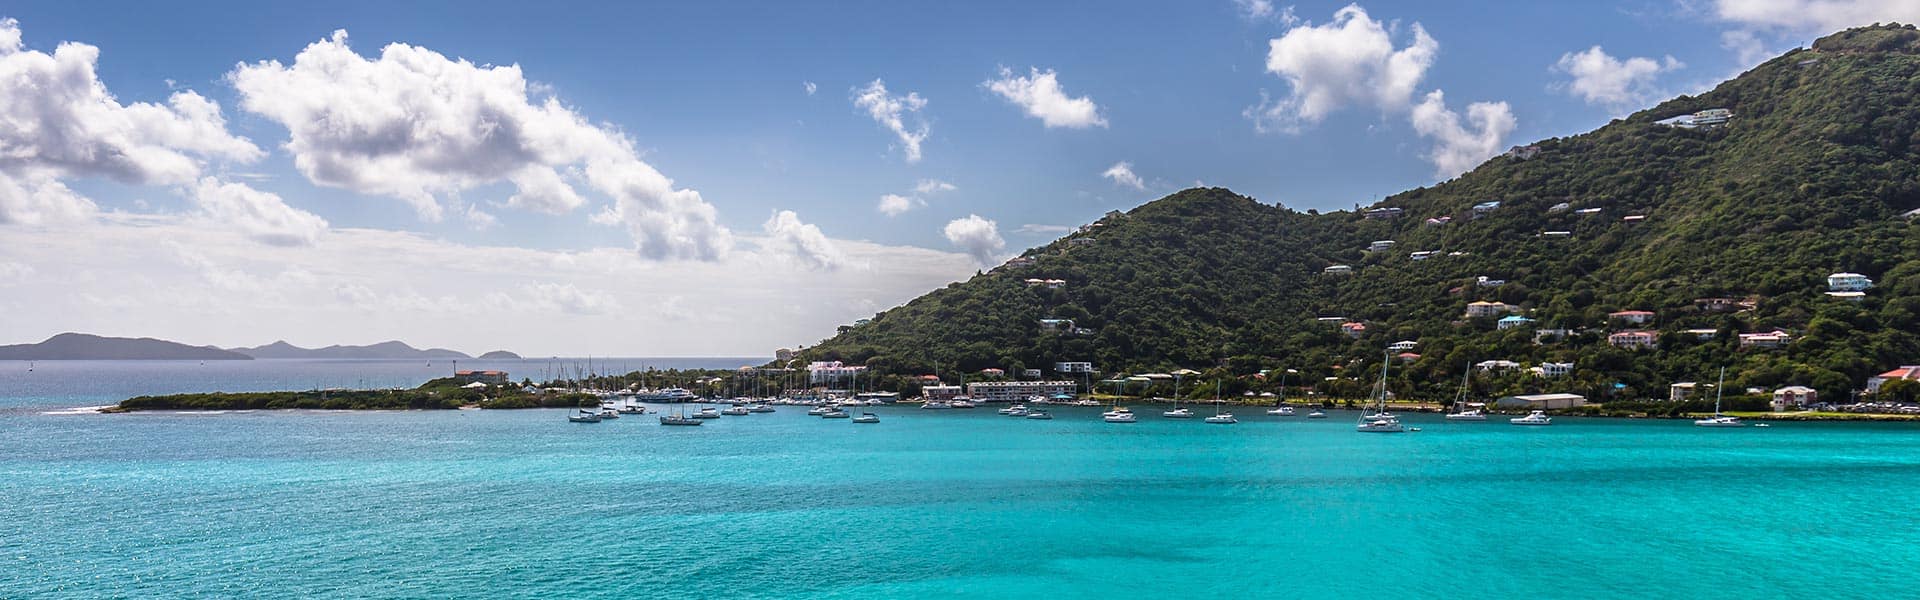 Caribe: Great Stirrup Cay y República Dominicana